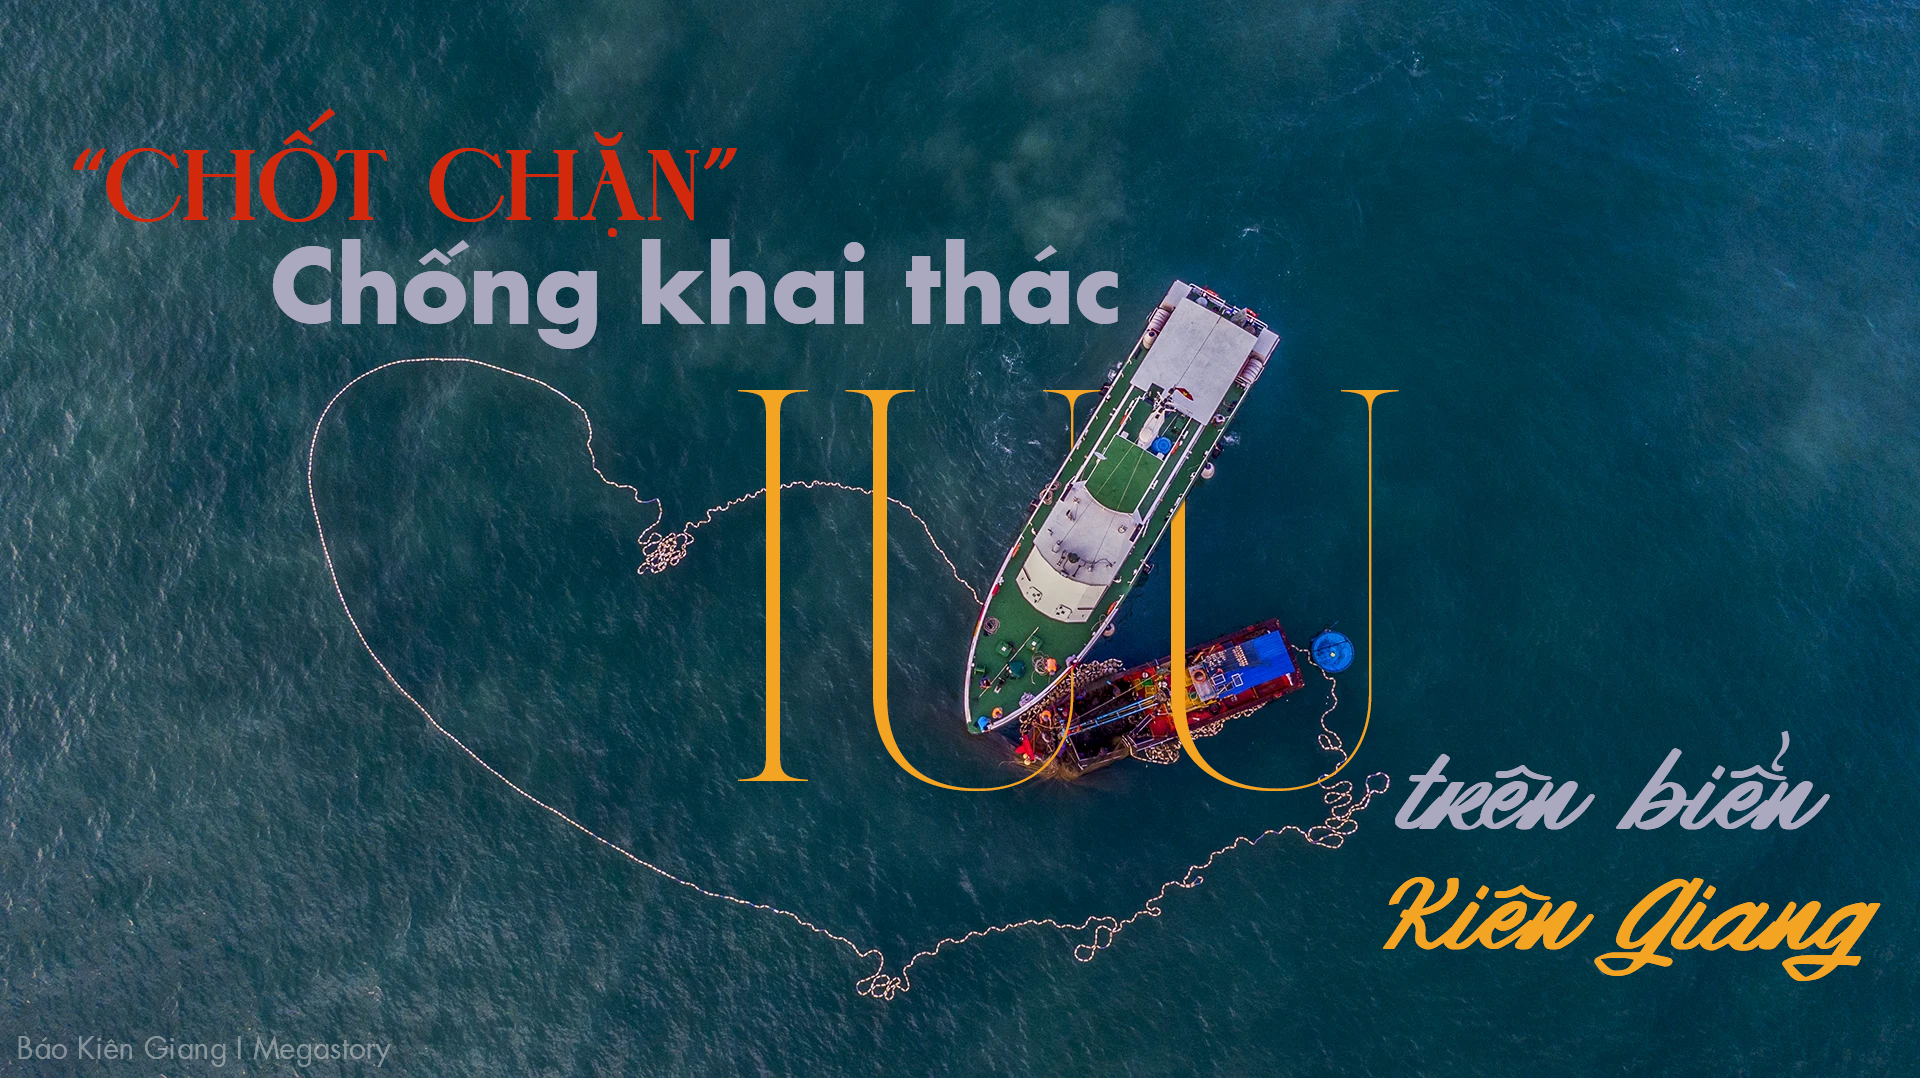 "Chốt chặn" chống khai thác IUU trên biển Kiên Giang